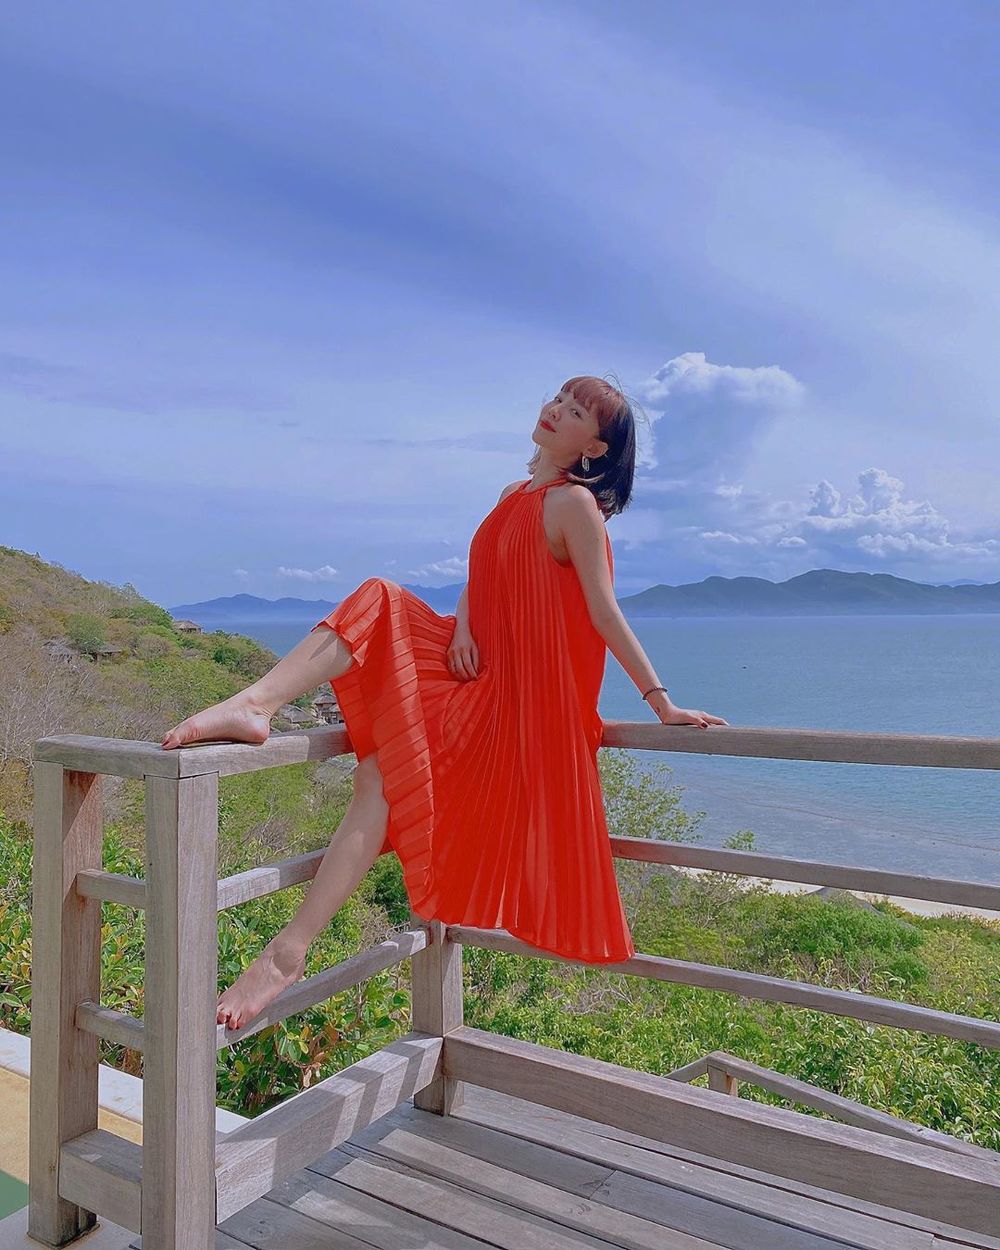  
Tóc Tiên cũng đang có chuyến đi Nha Trang cùng hội bạn thân thiết, người đẹp chọn mẫu váy xòe dáng xếp ly màu cam đỏ. (Ảnh: Instagram nhân vật)